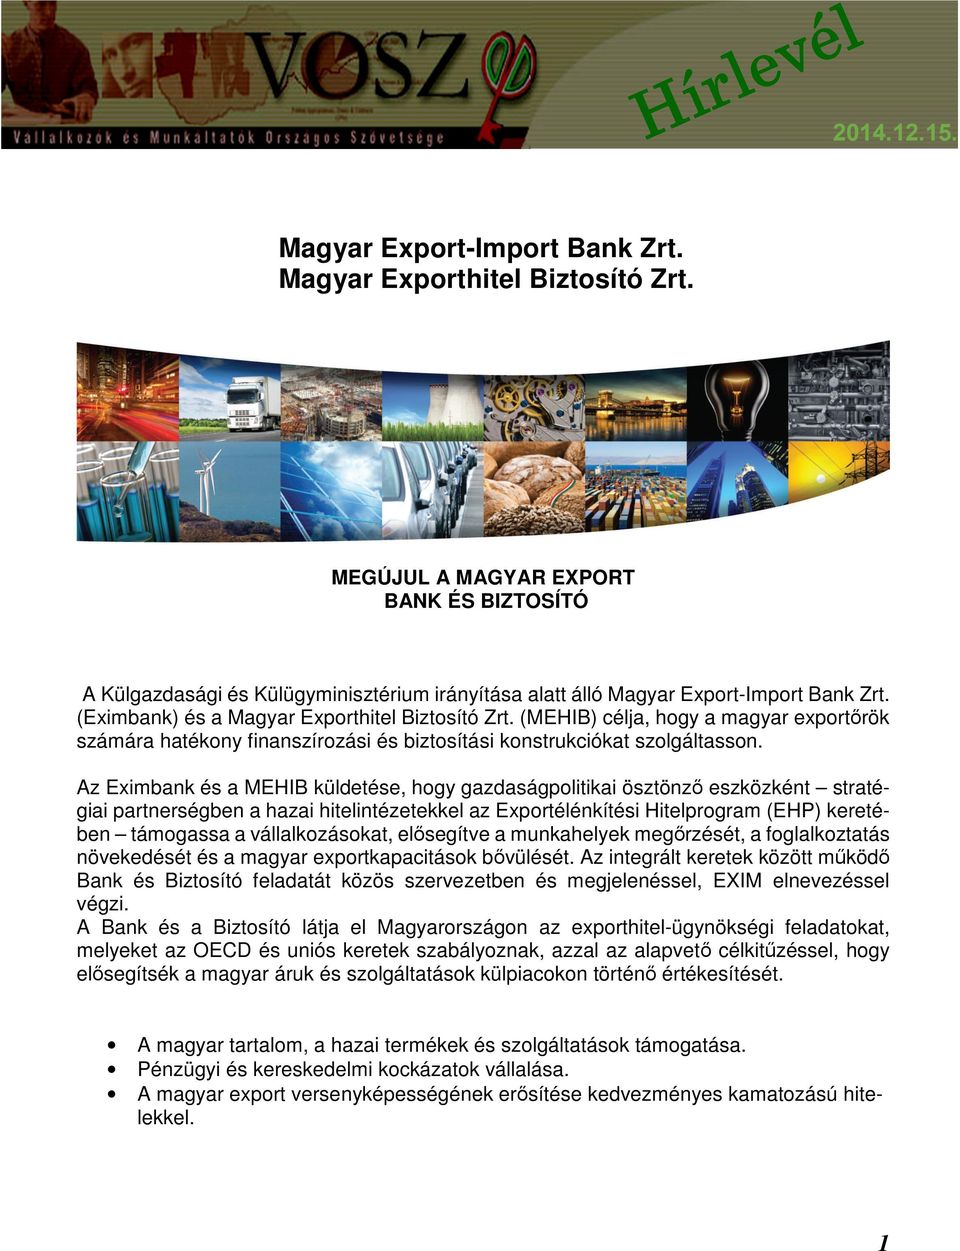 Az Eximbank és a MEHIB küldetése, hogy gazdaságpolitikai ösztönző eszközként stratégiai partnerségben a hazai hitelintézetekkel az Exportélénkítési Hitelprogram (EHP) keretében támogassa a